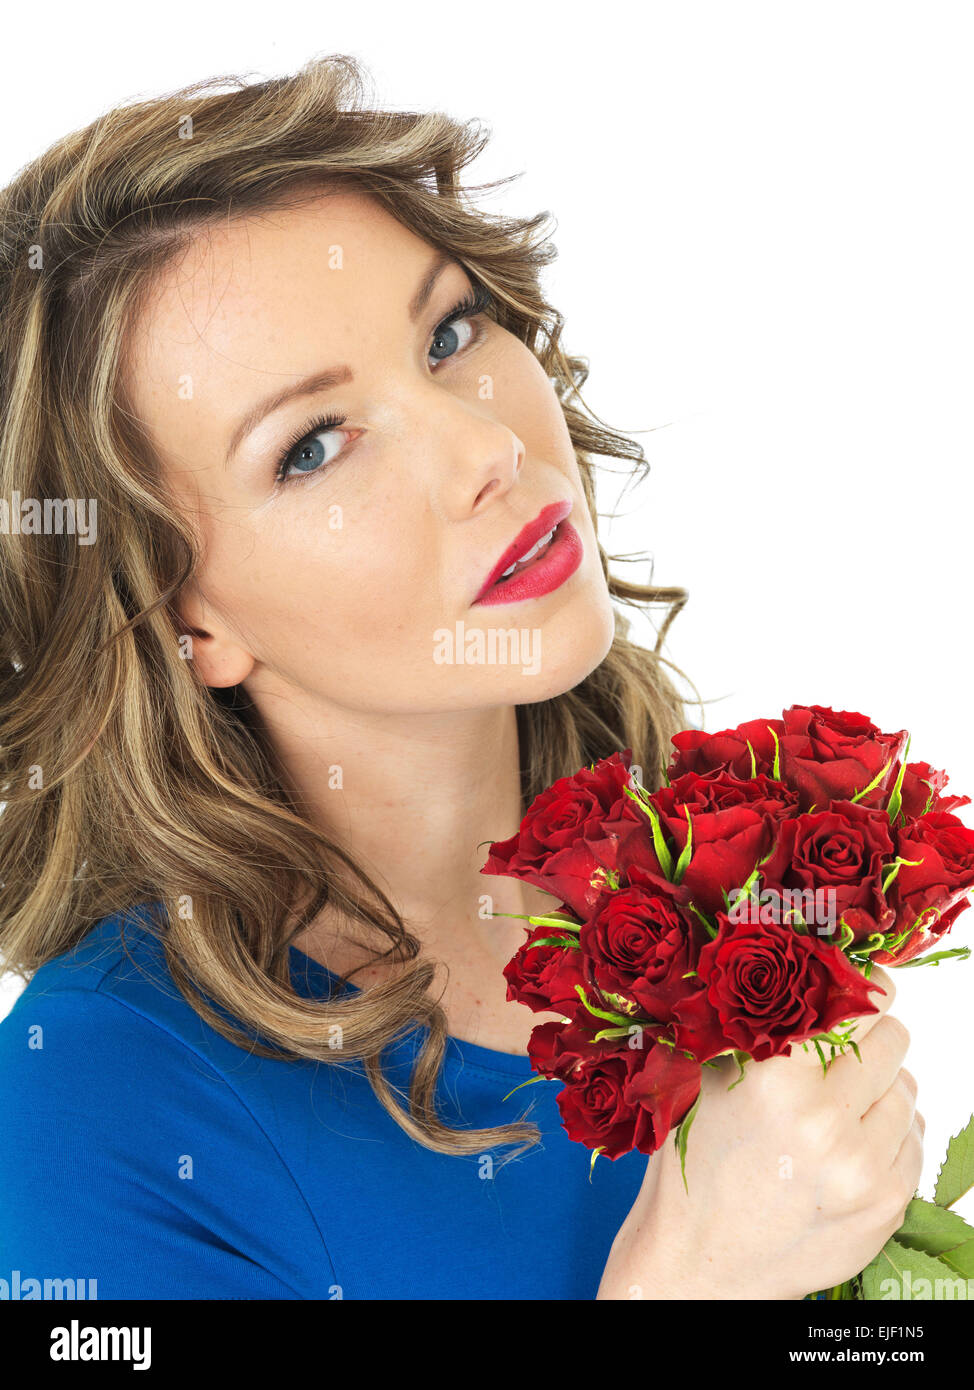 Glückliche junge Frau hält einen Strauß roter Rosen Stockfoto